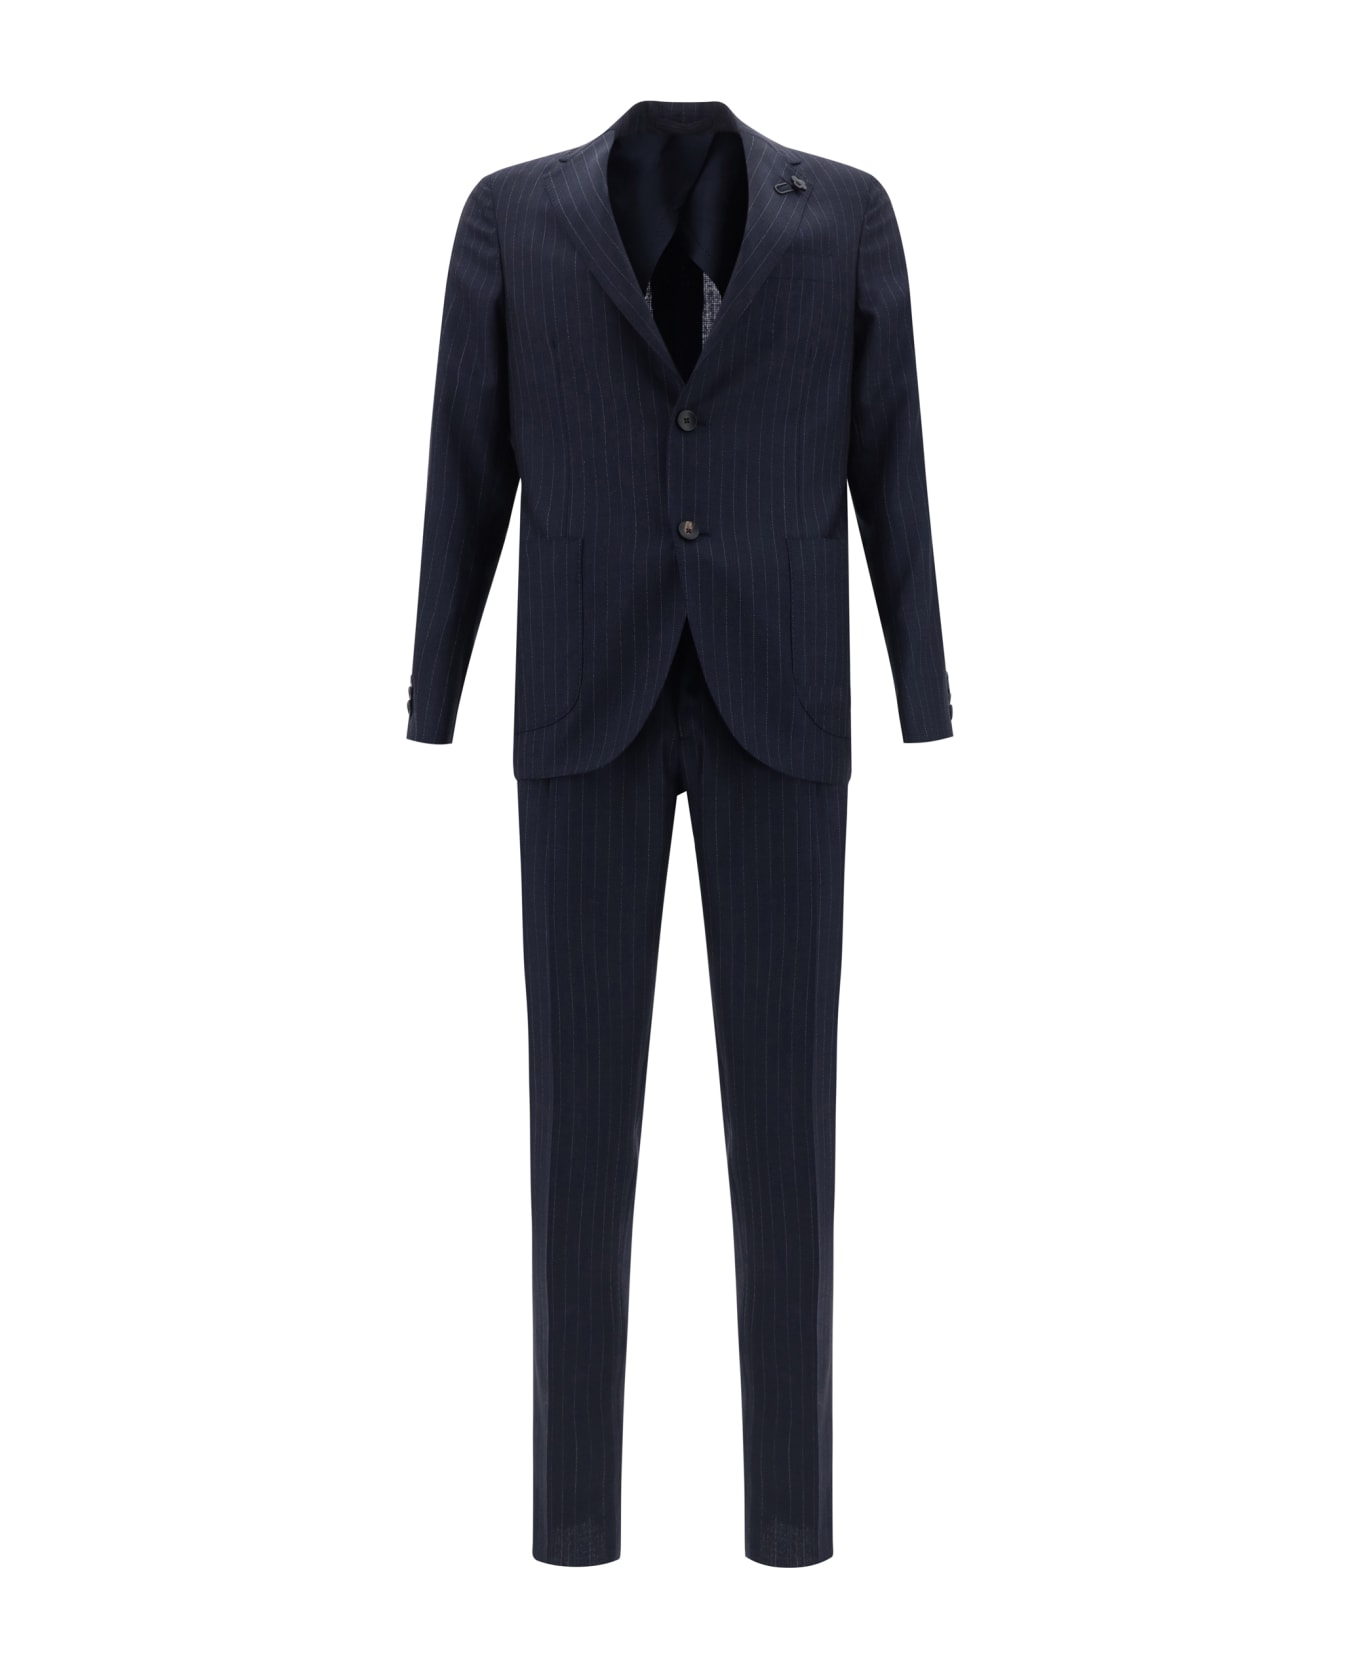 Lardini Suit - 850bi スーツ